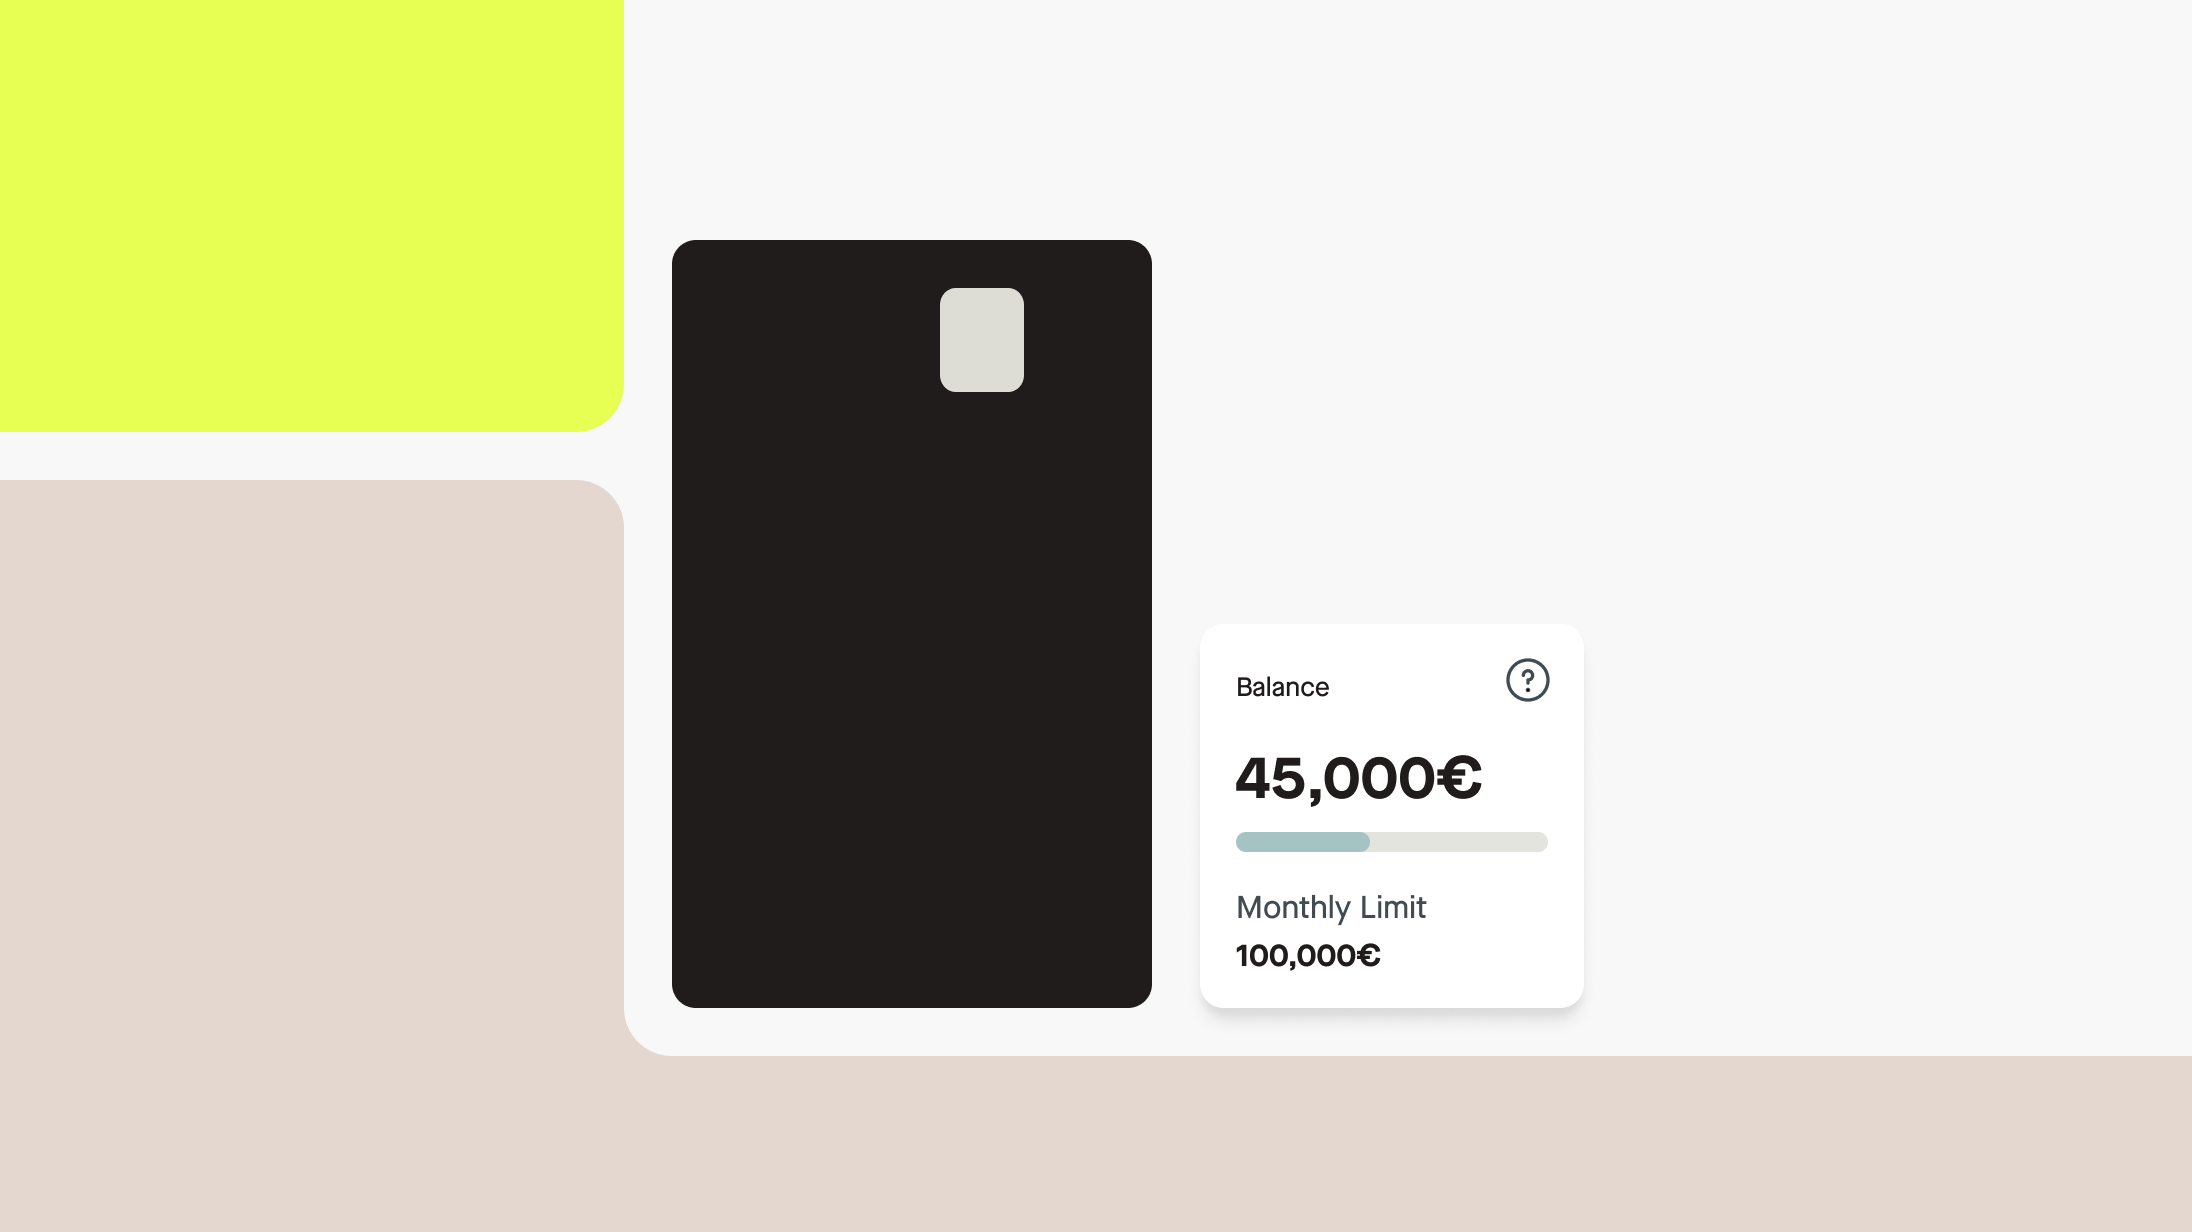 Musta luottokortti on premium-tason kortti, jossa on erilaisia lisämukavuuksia. Kuvassa musta kortti ja sen saldo.